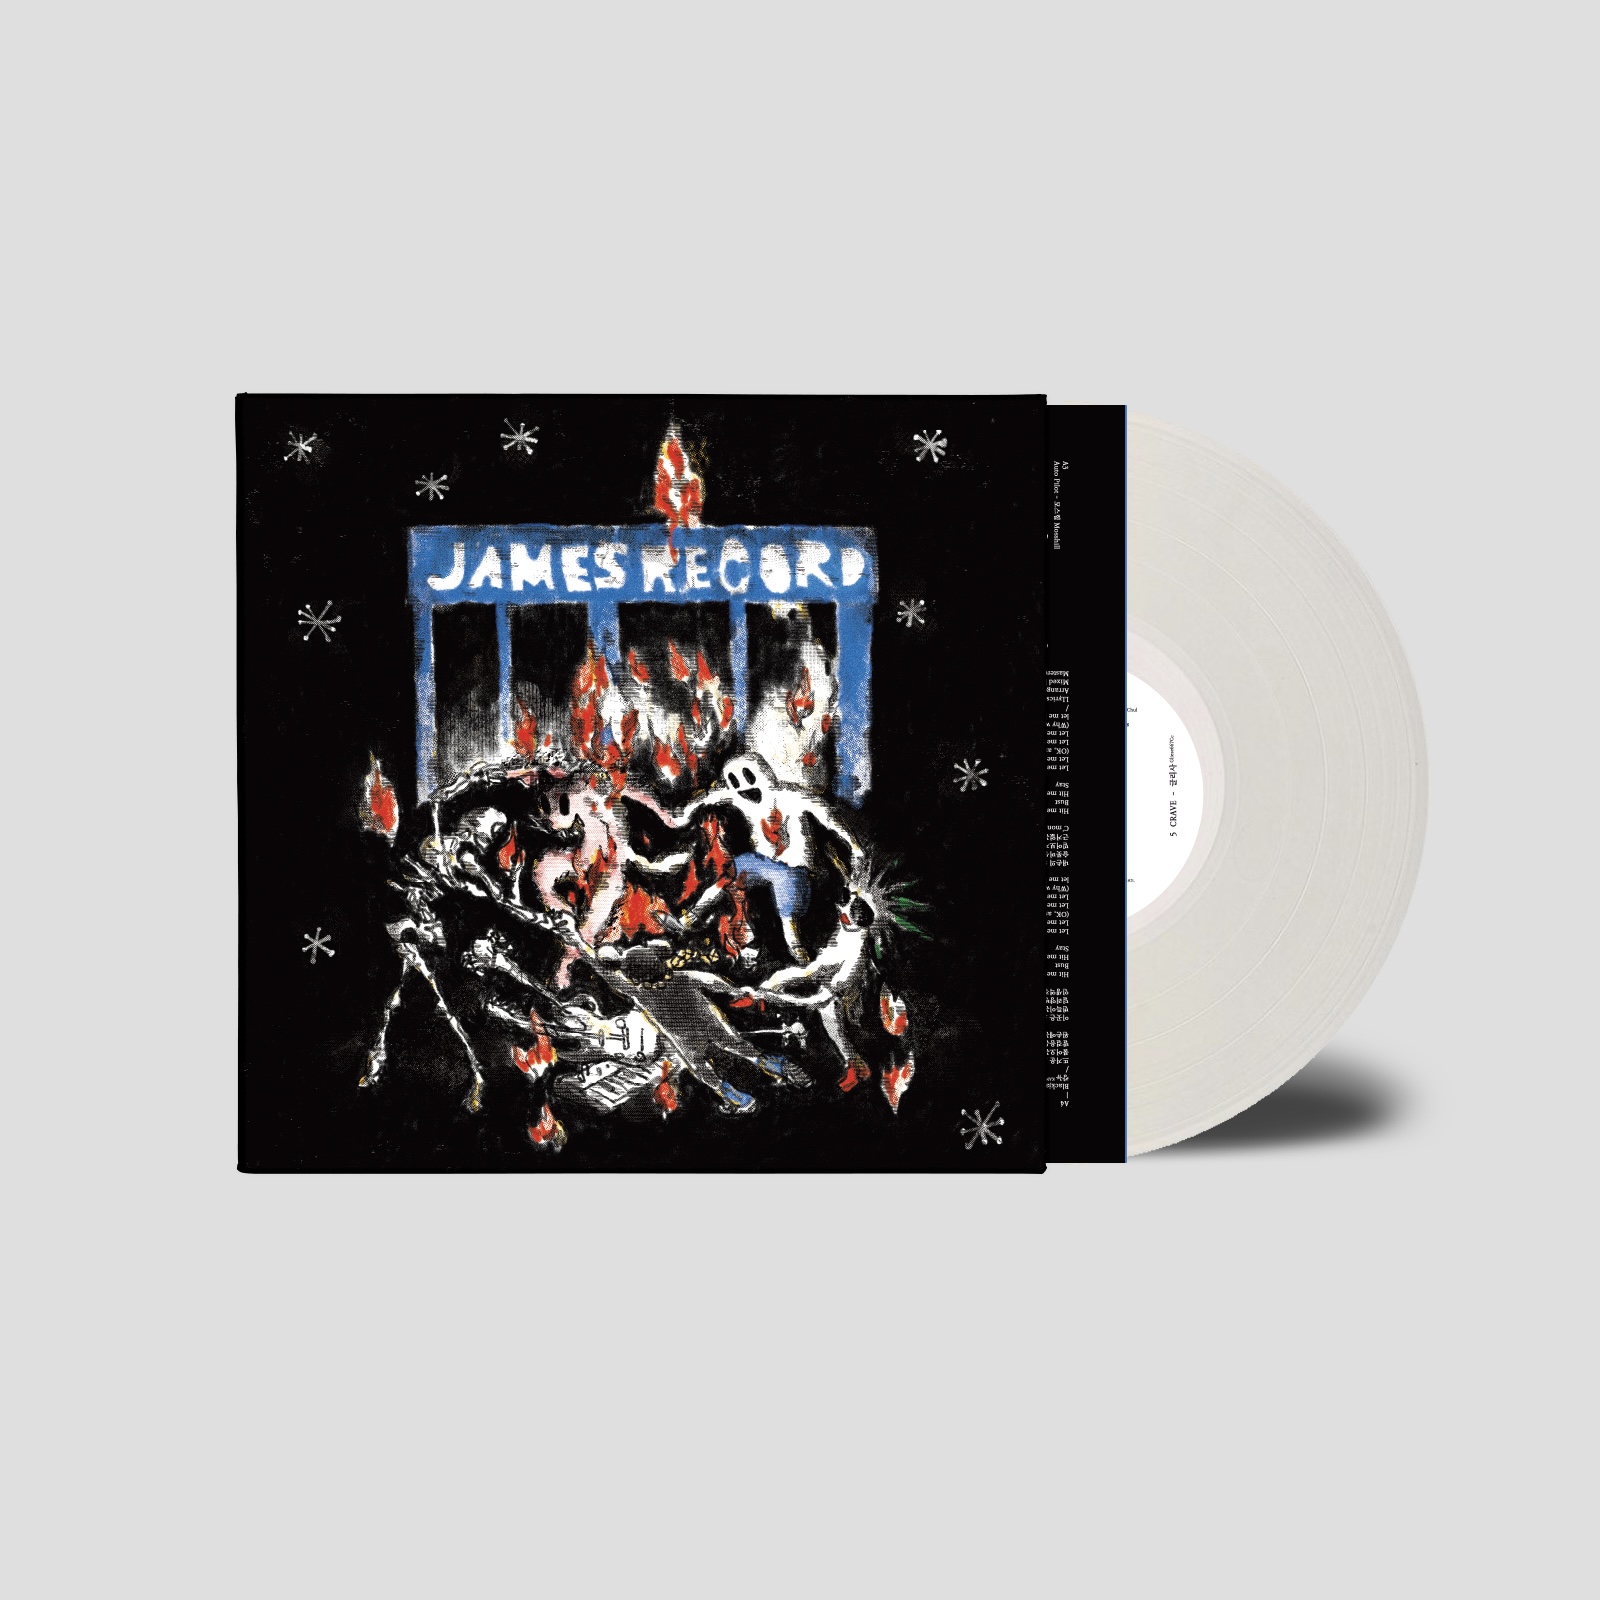 예약판매[PRE-ORDER] 제임스레코드 컴필레이션 &#039;여름&#039; (JamesRecord Compilation) [투명 화이트 컬러 LP] [250장 한정반]